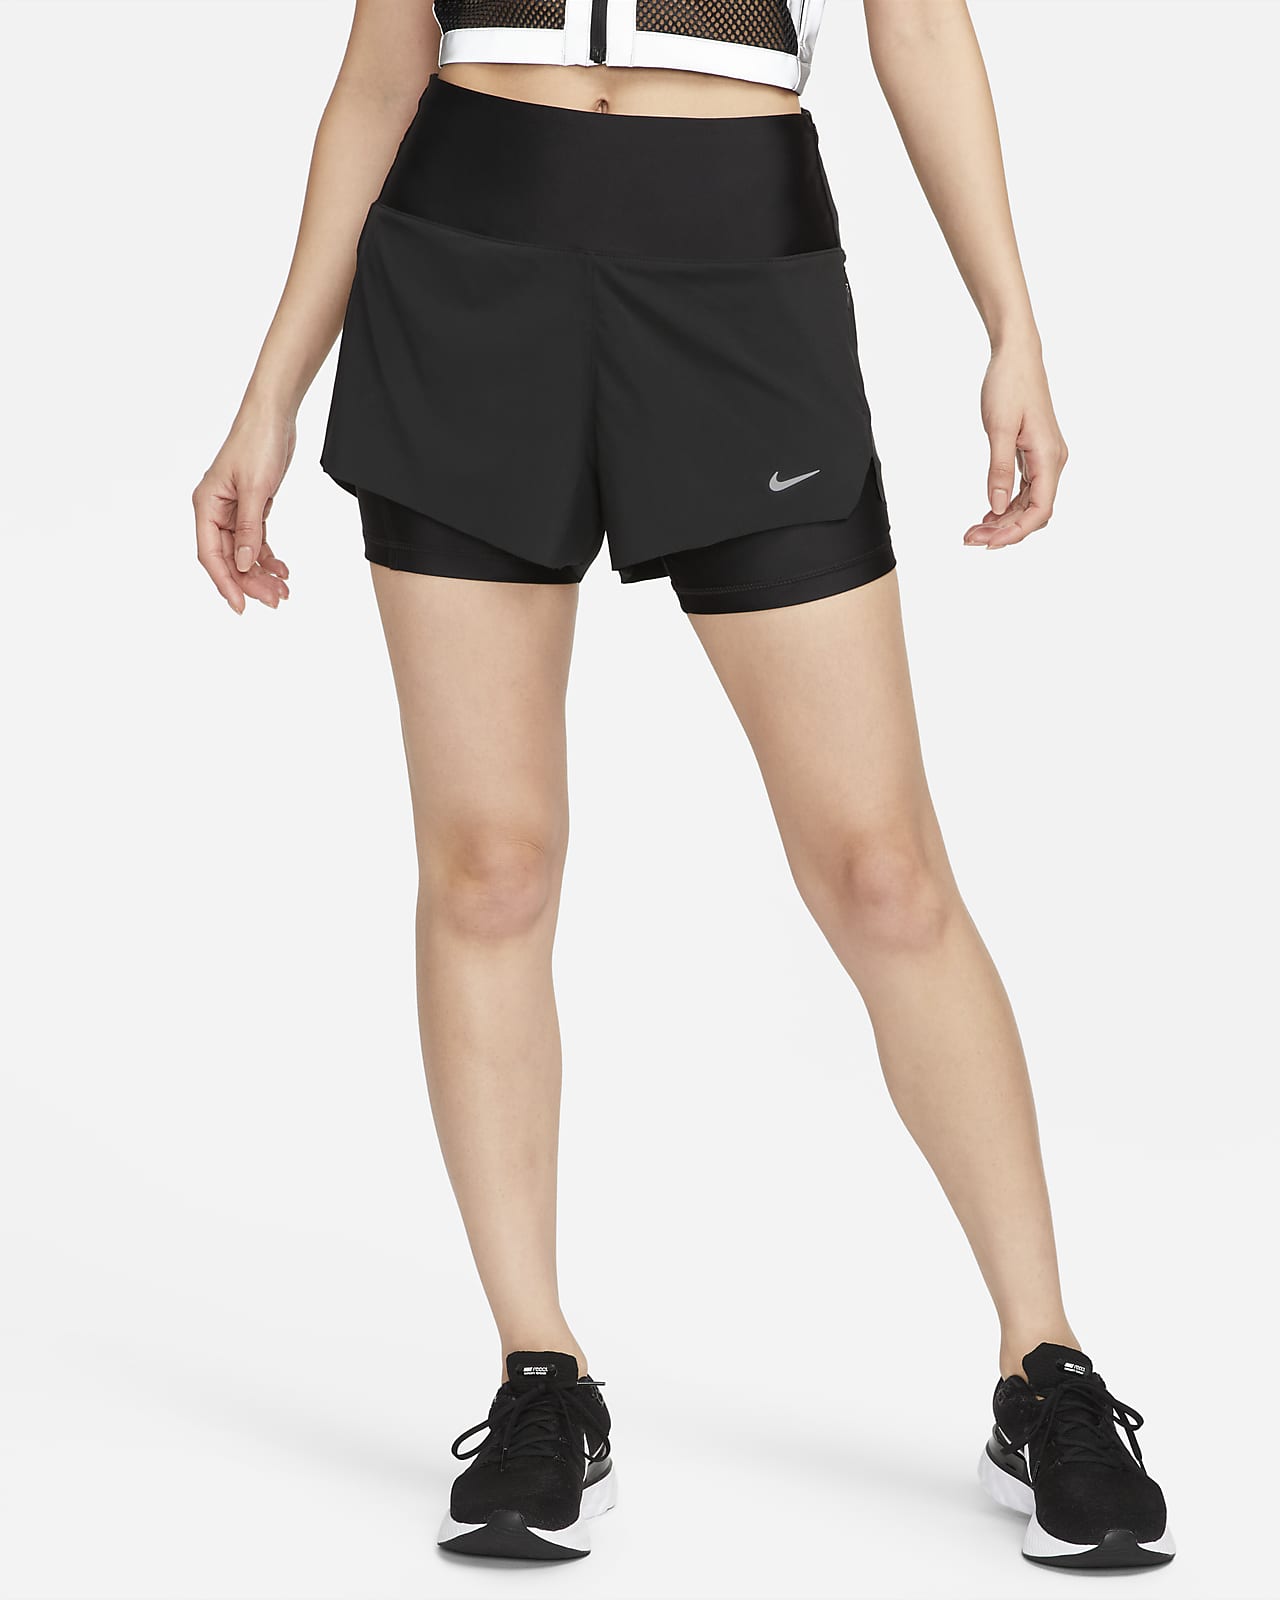 กางเกงวิ่งขาสั้น 3 นิ้วเอวปานกลางผู้หญิงแบบ 2-IN-1 พร้อมกระเป๋า Nike Dri-FIT Swift